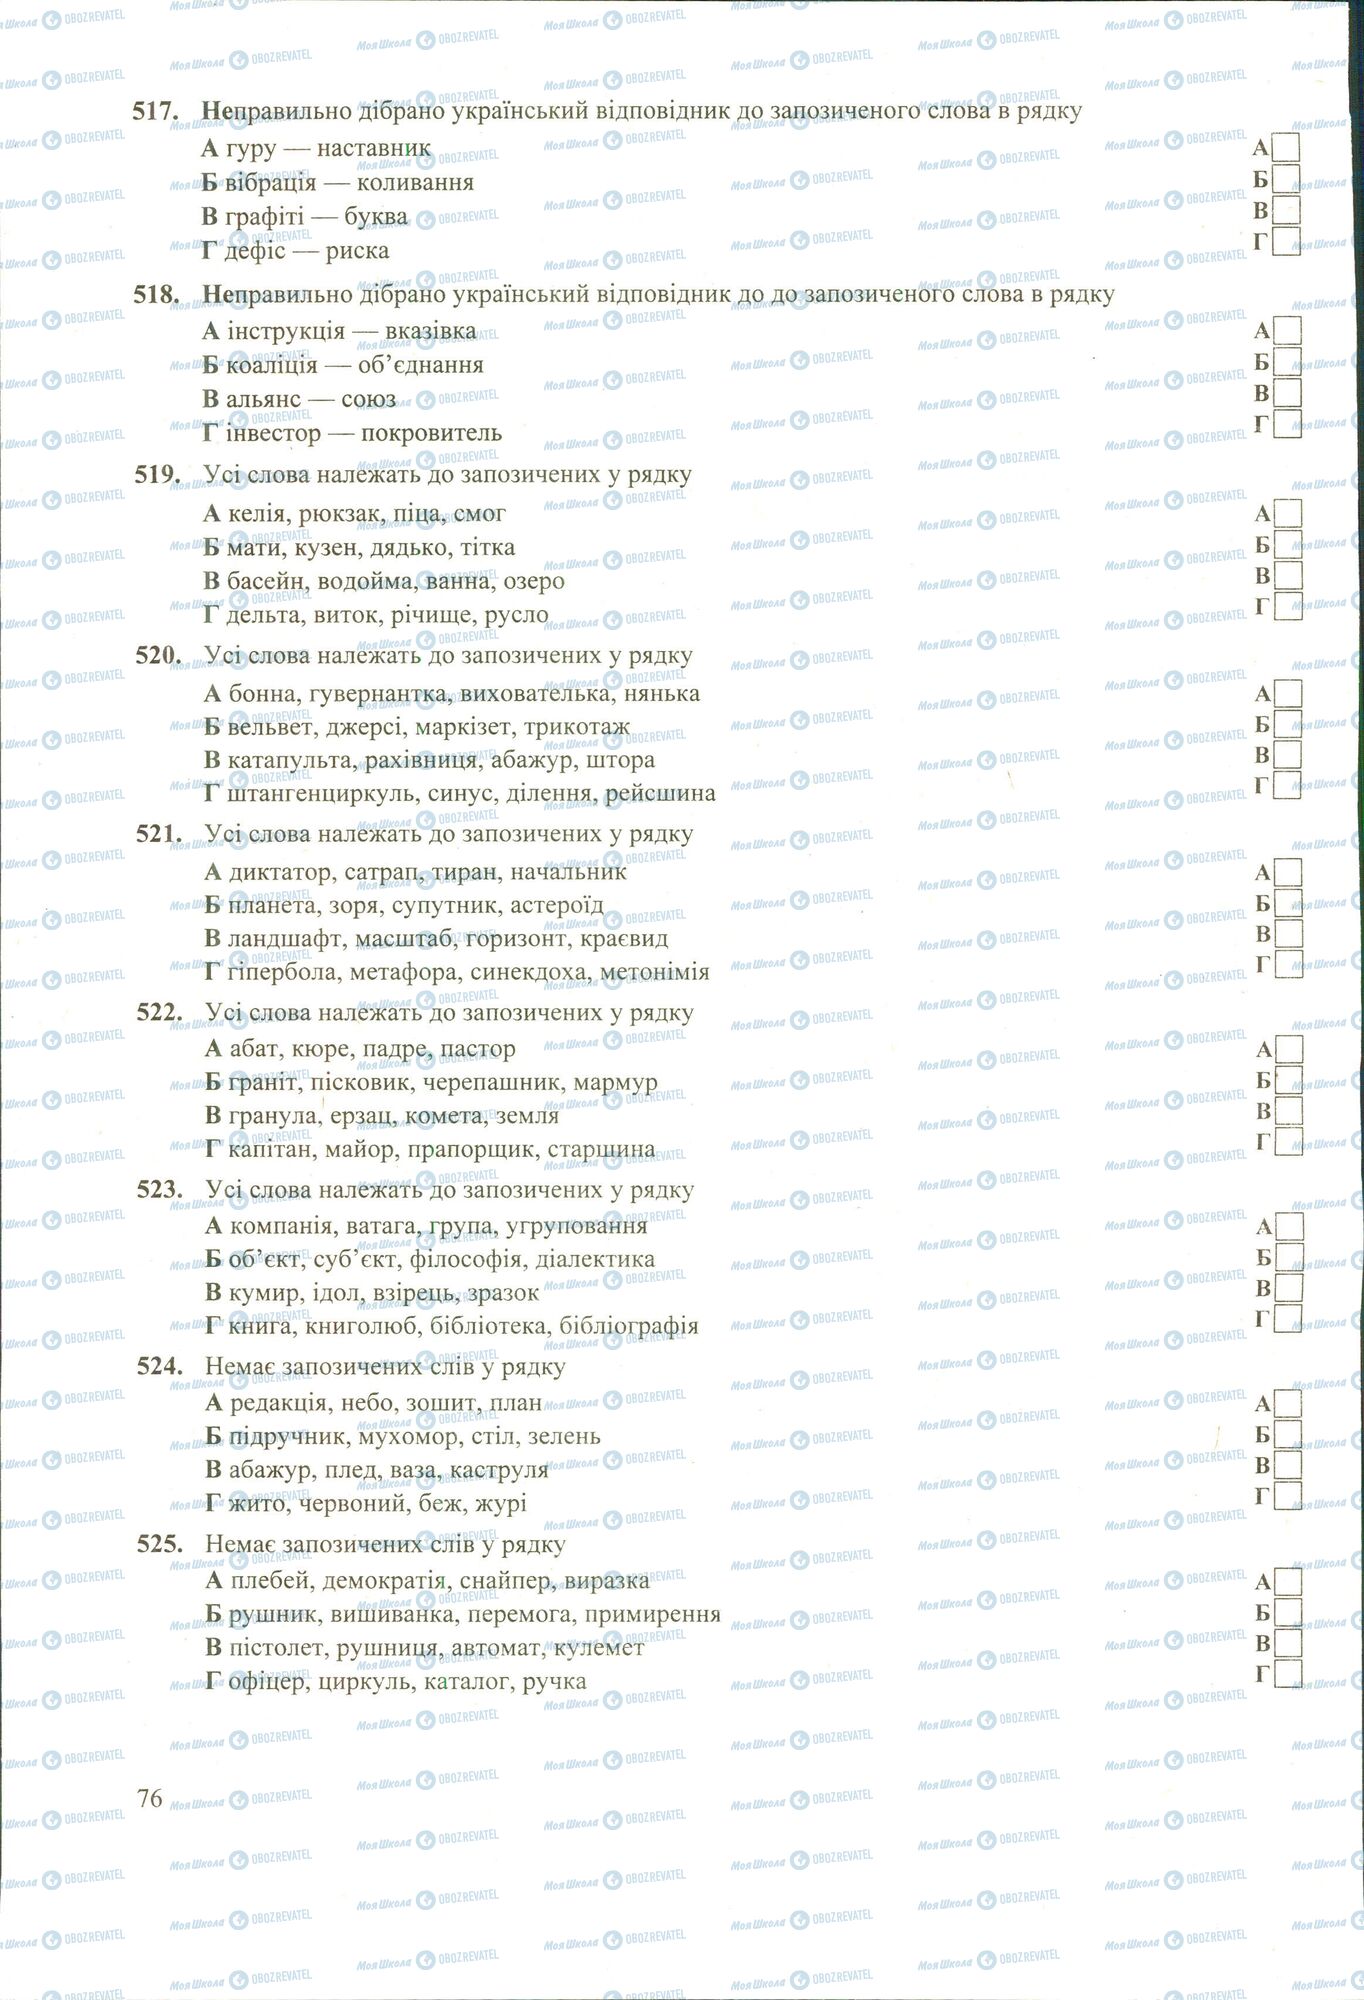 ЗНО Укр мова 11 класс страница 517-525